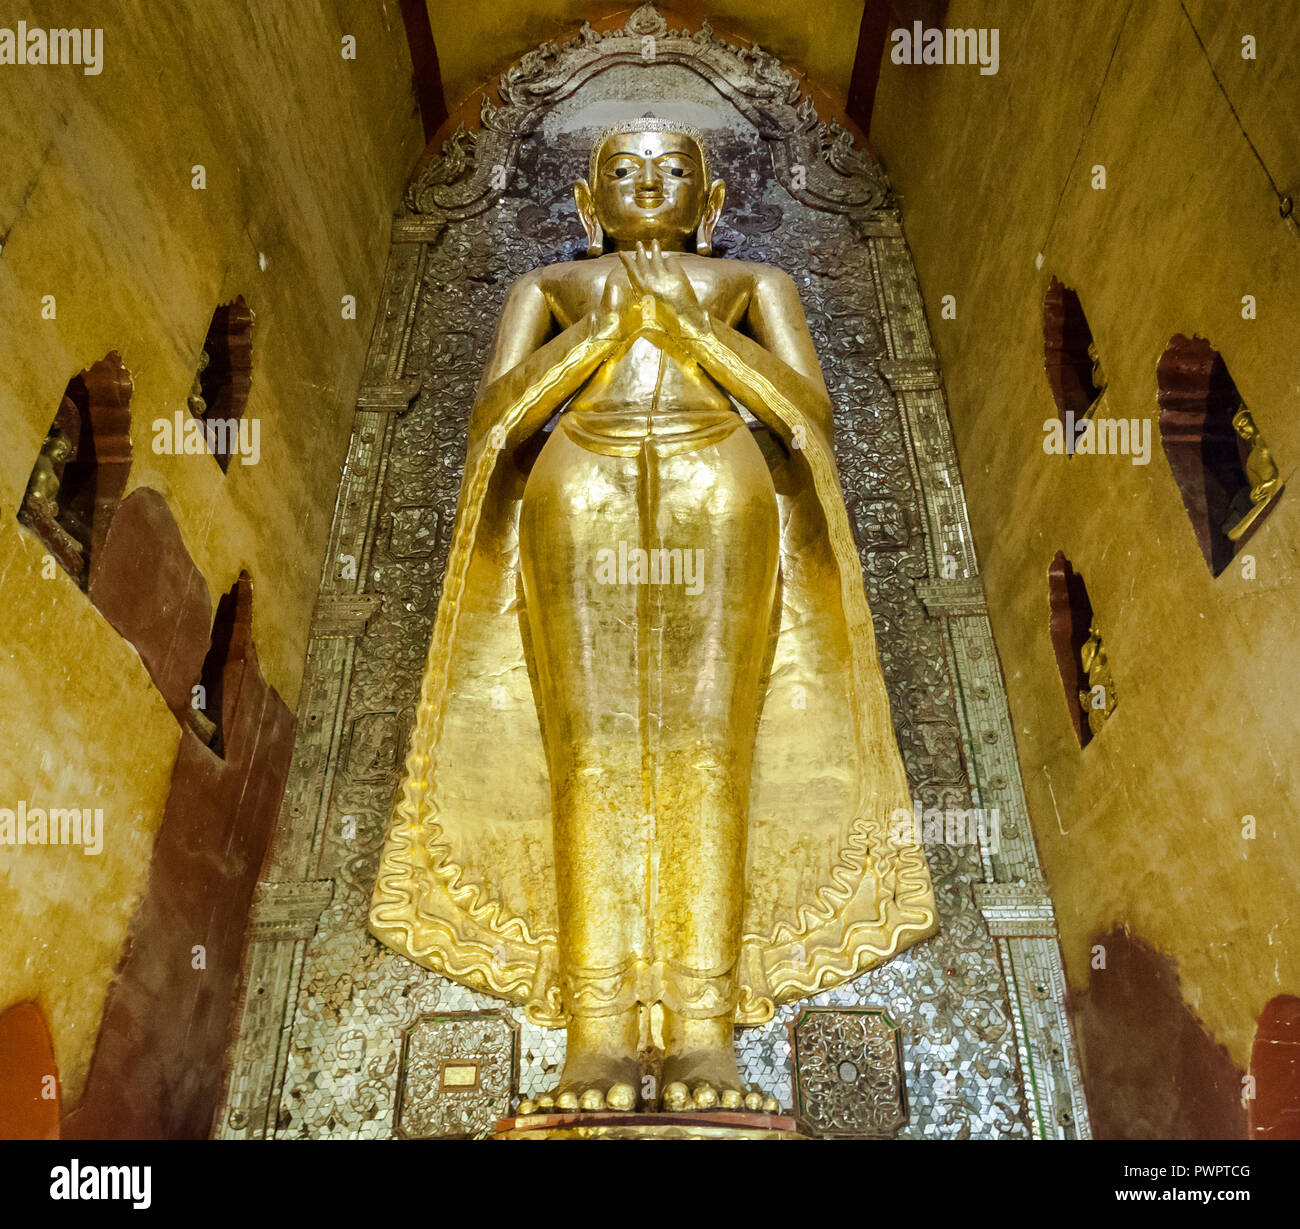 Statue de Bouddha au temple de Bagan, Myanmar Banque D'Images